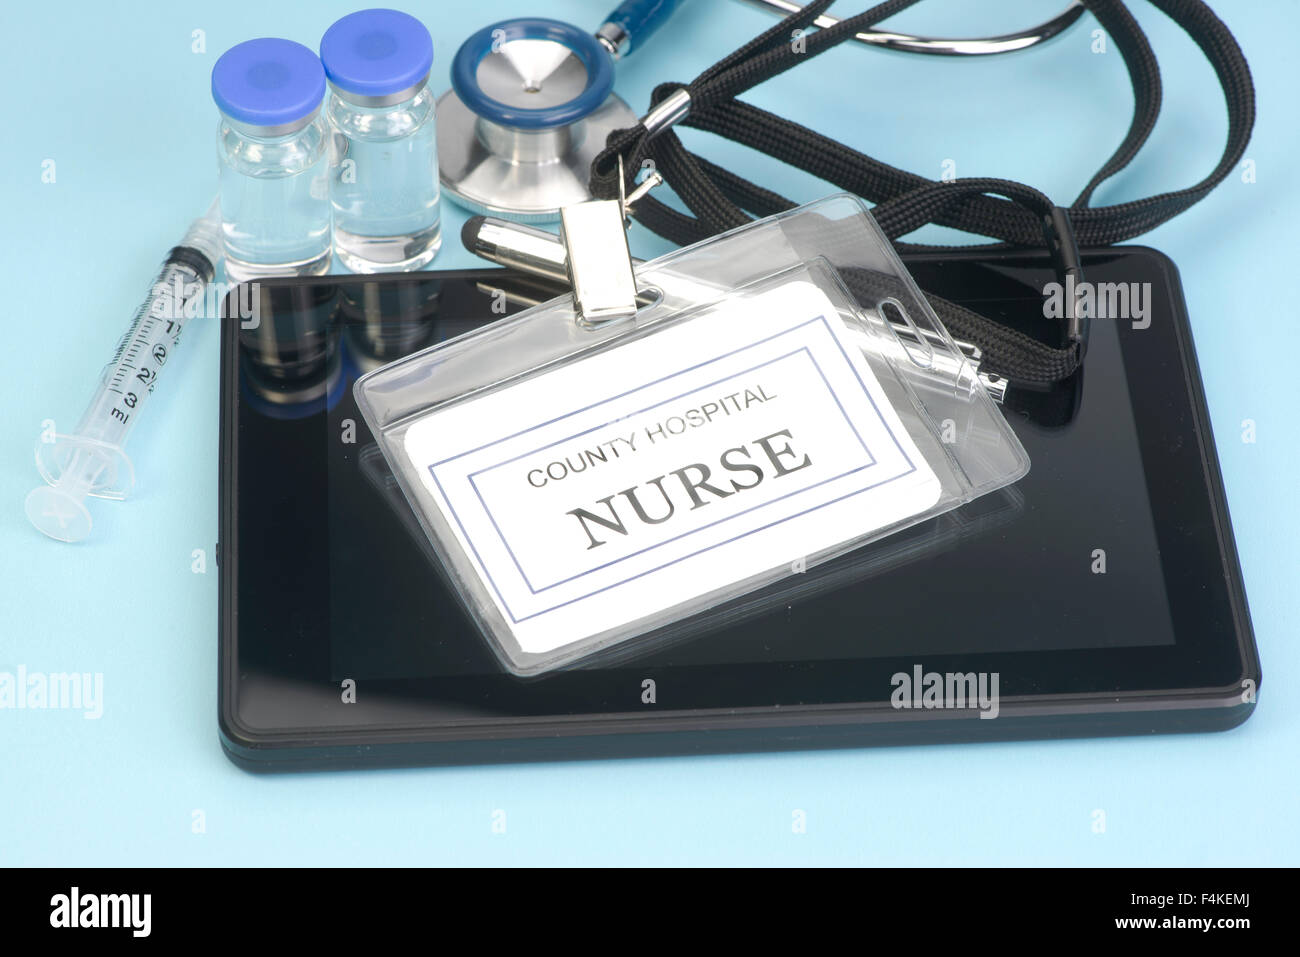 Infermiera fittizio tag di identificazione sul personal computing dispositivo con uno stetoscopio e fiale. Foto Stock